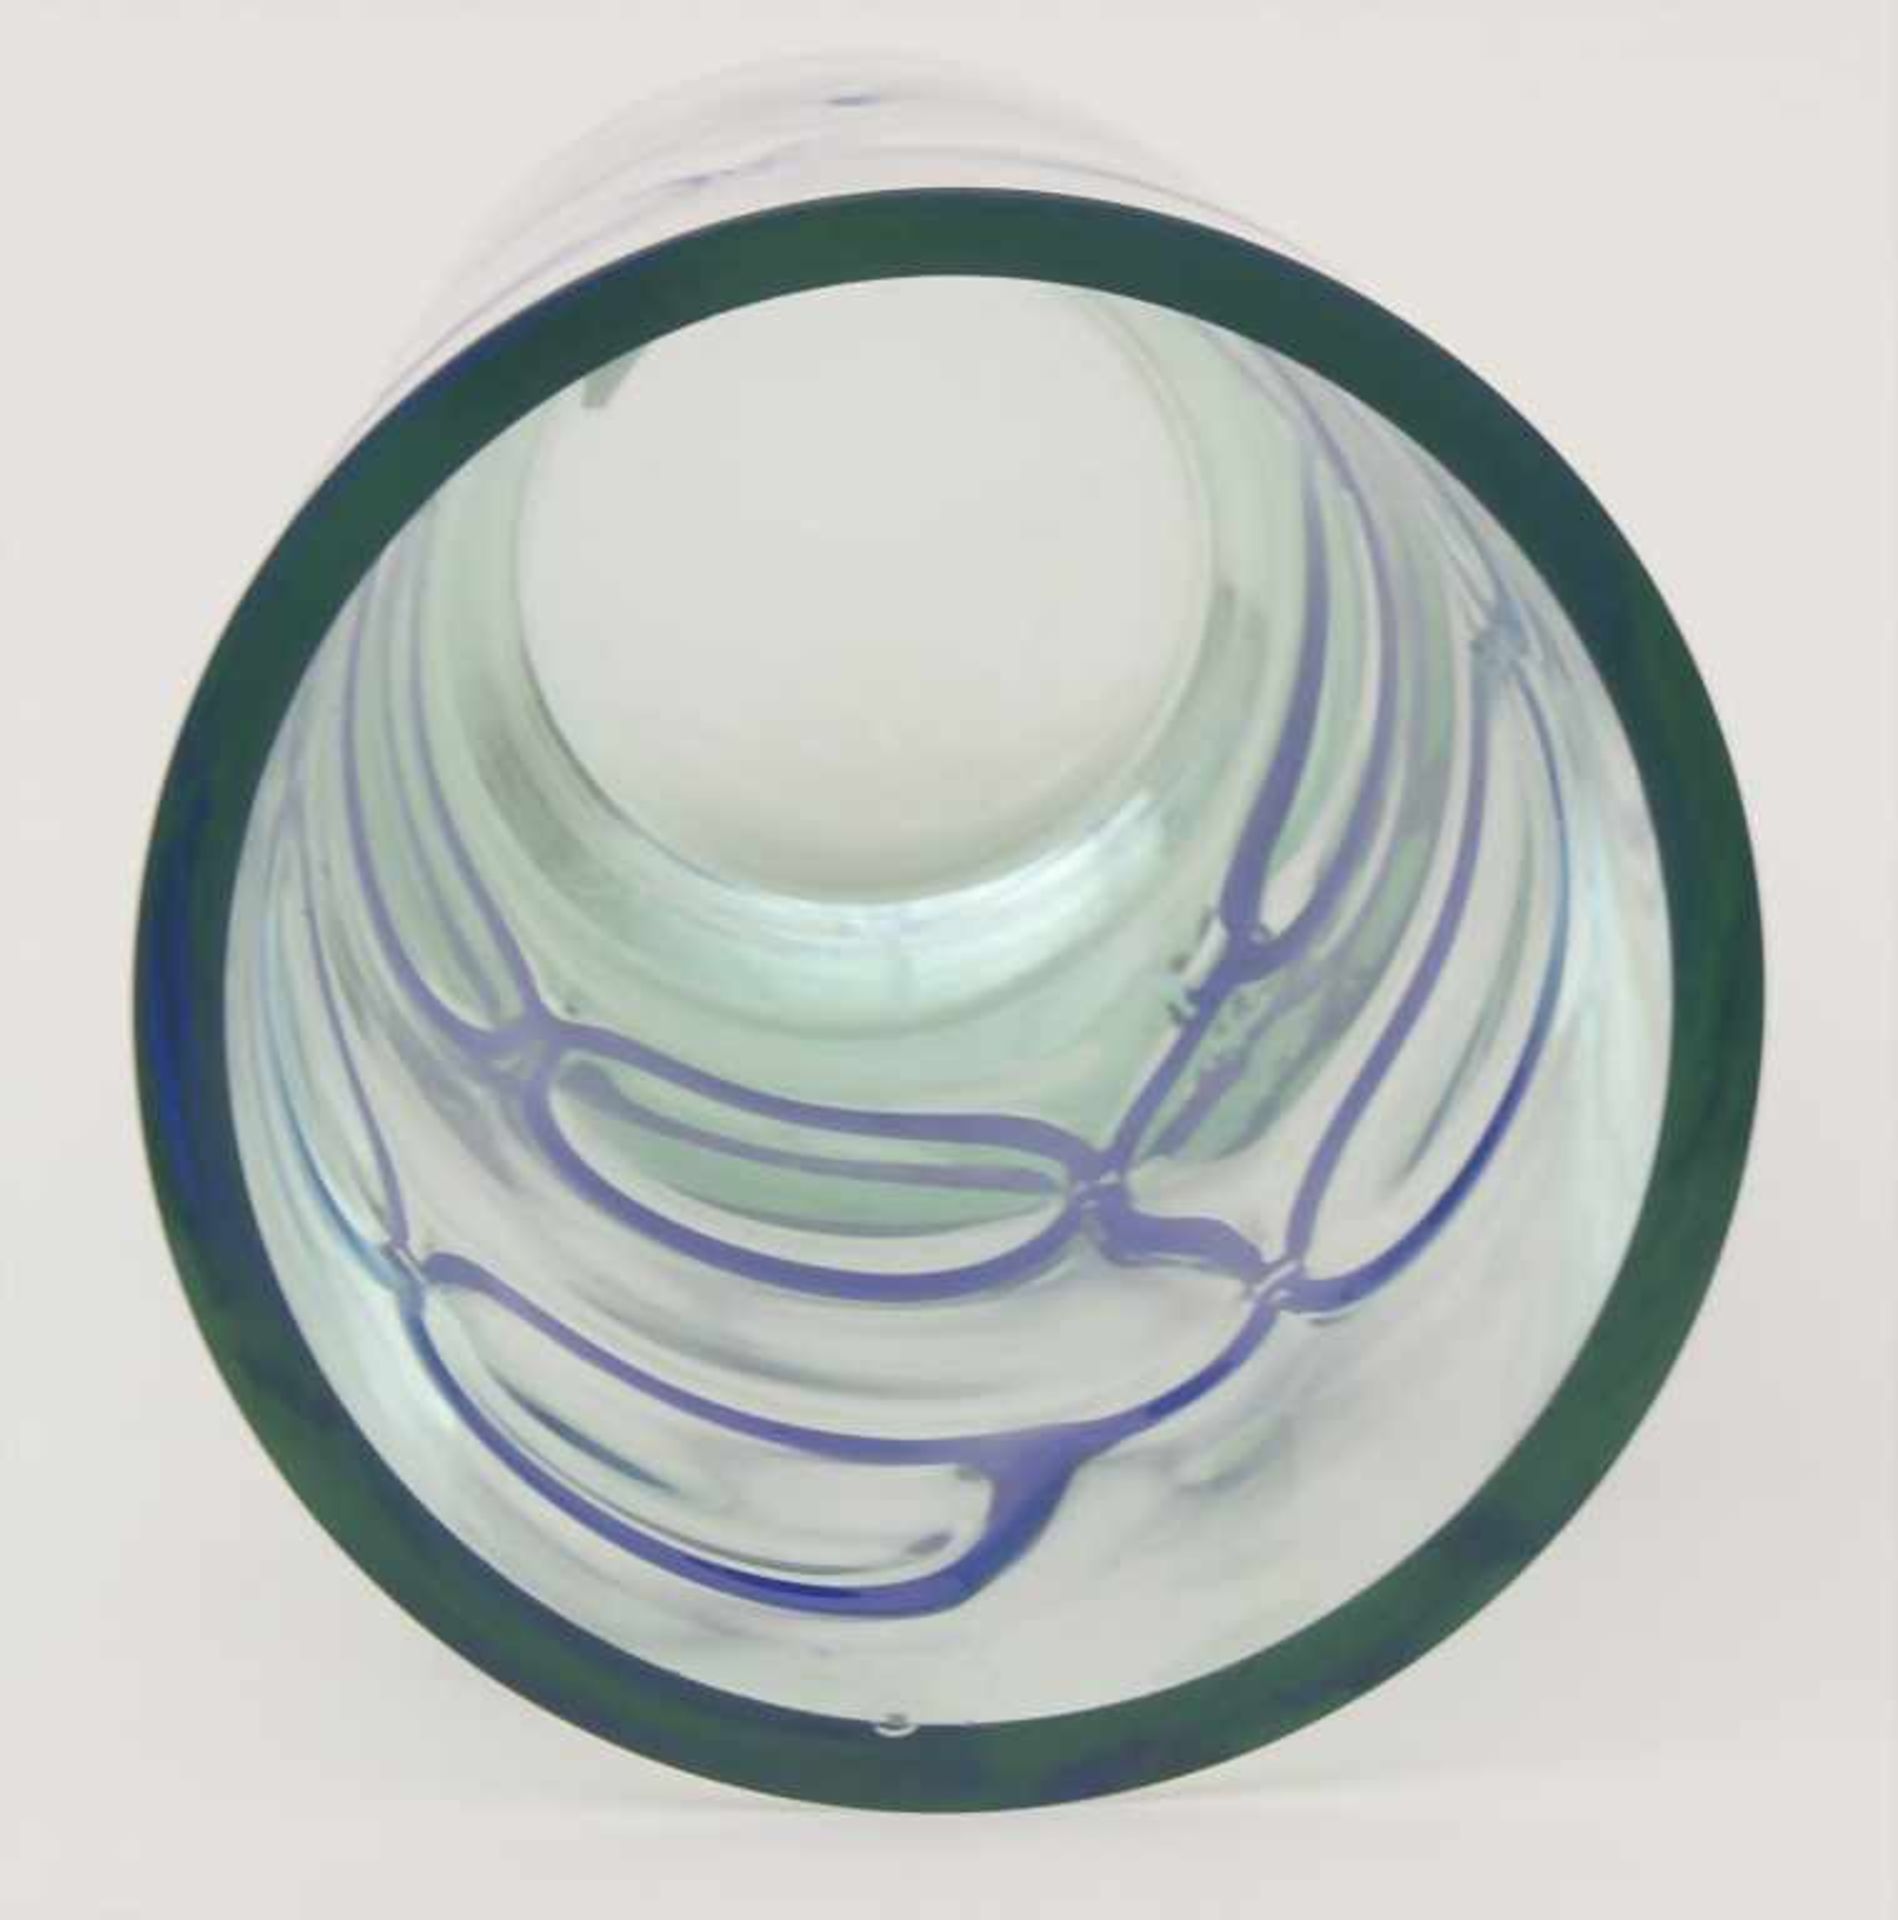 Vase / A vase, wohl Barovier und Toso, Murano, 60/70 er JahreMaterial: grünliches Glas, mit zwei - Bild 3 aus 4